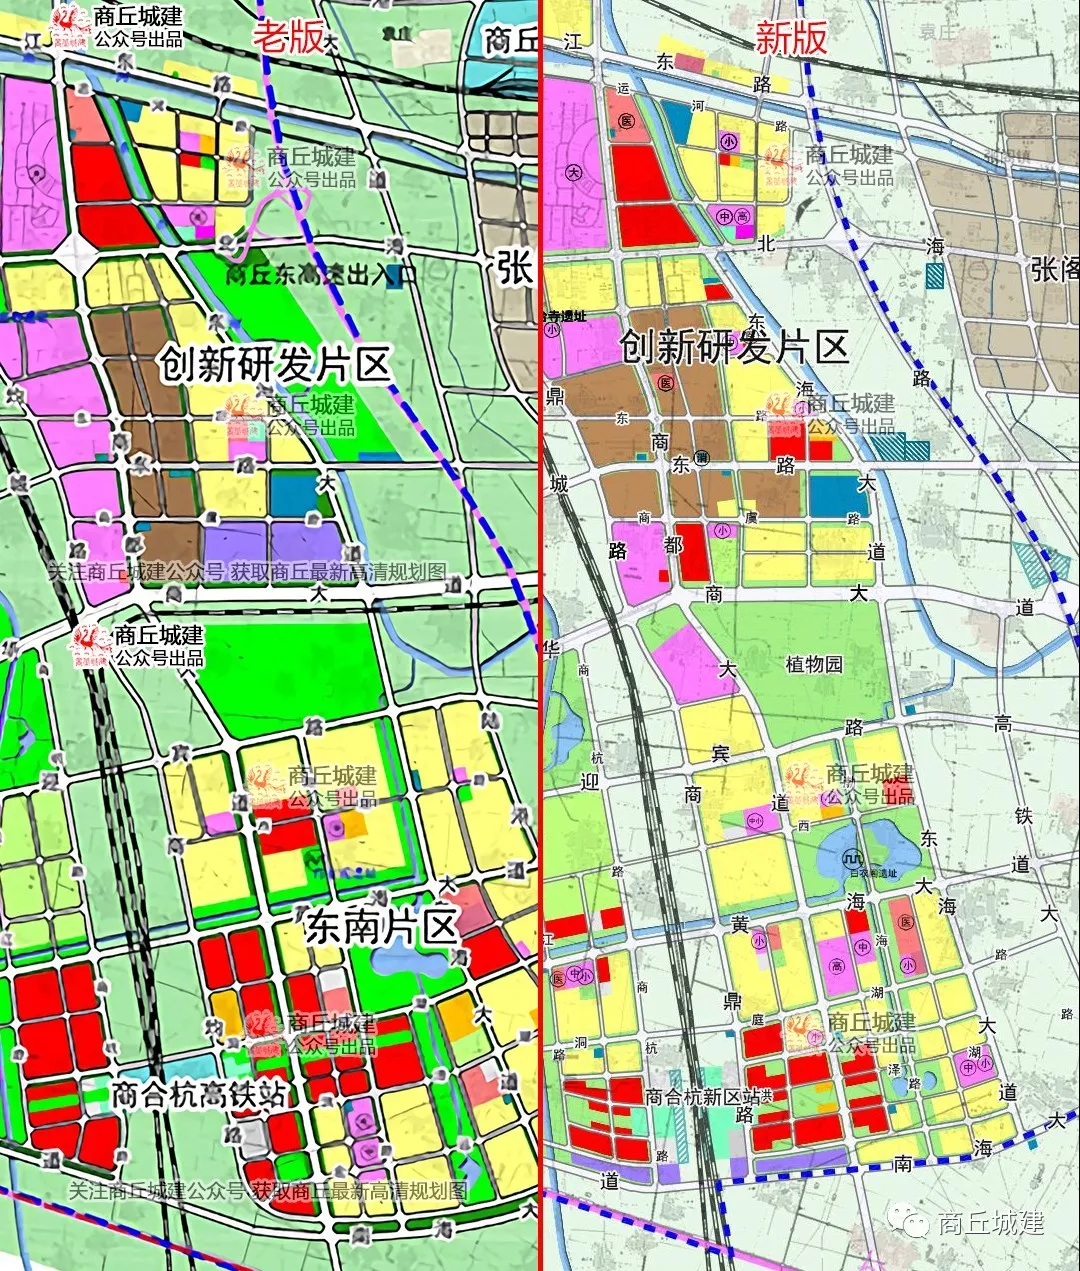 最新规划图 商丘市城乡总体规划 20-2035